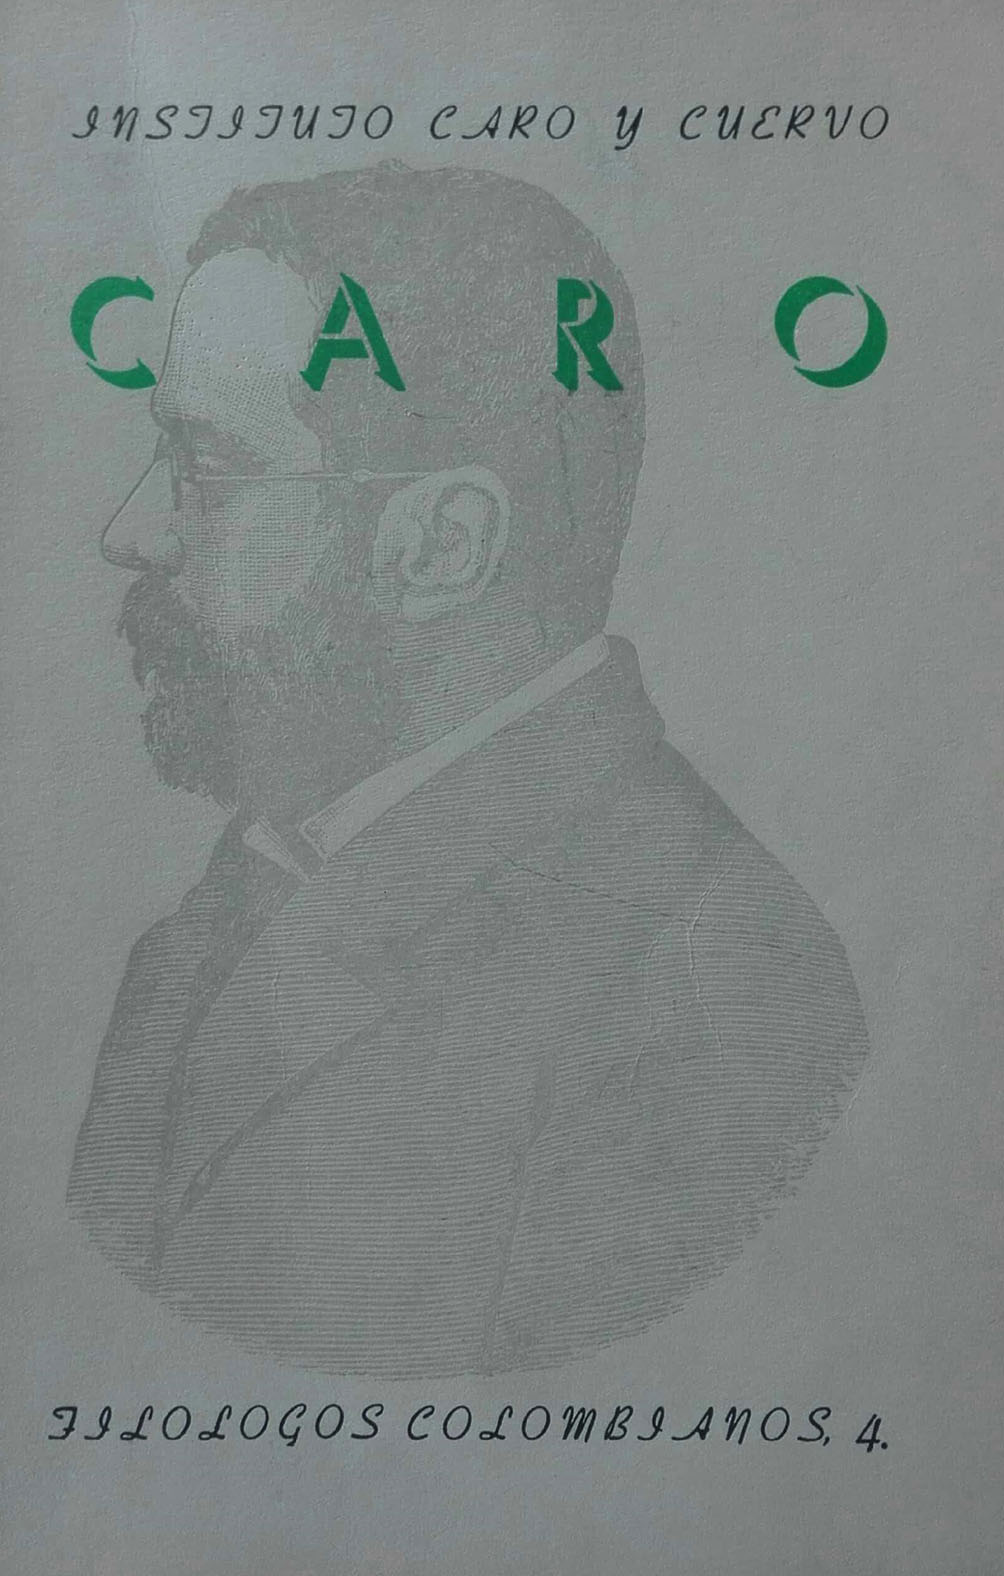 Miguel Antonio Caro. Actos celebrados en su honor en la ciudad de Roma